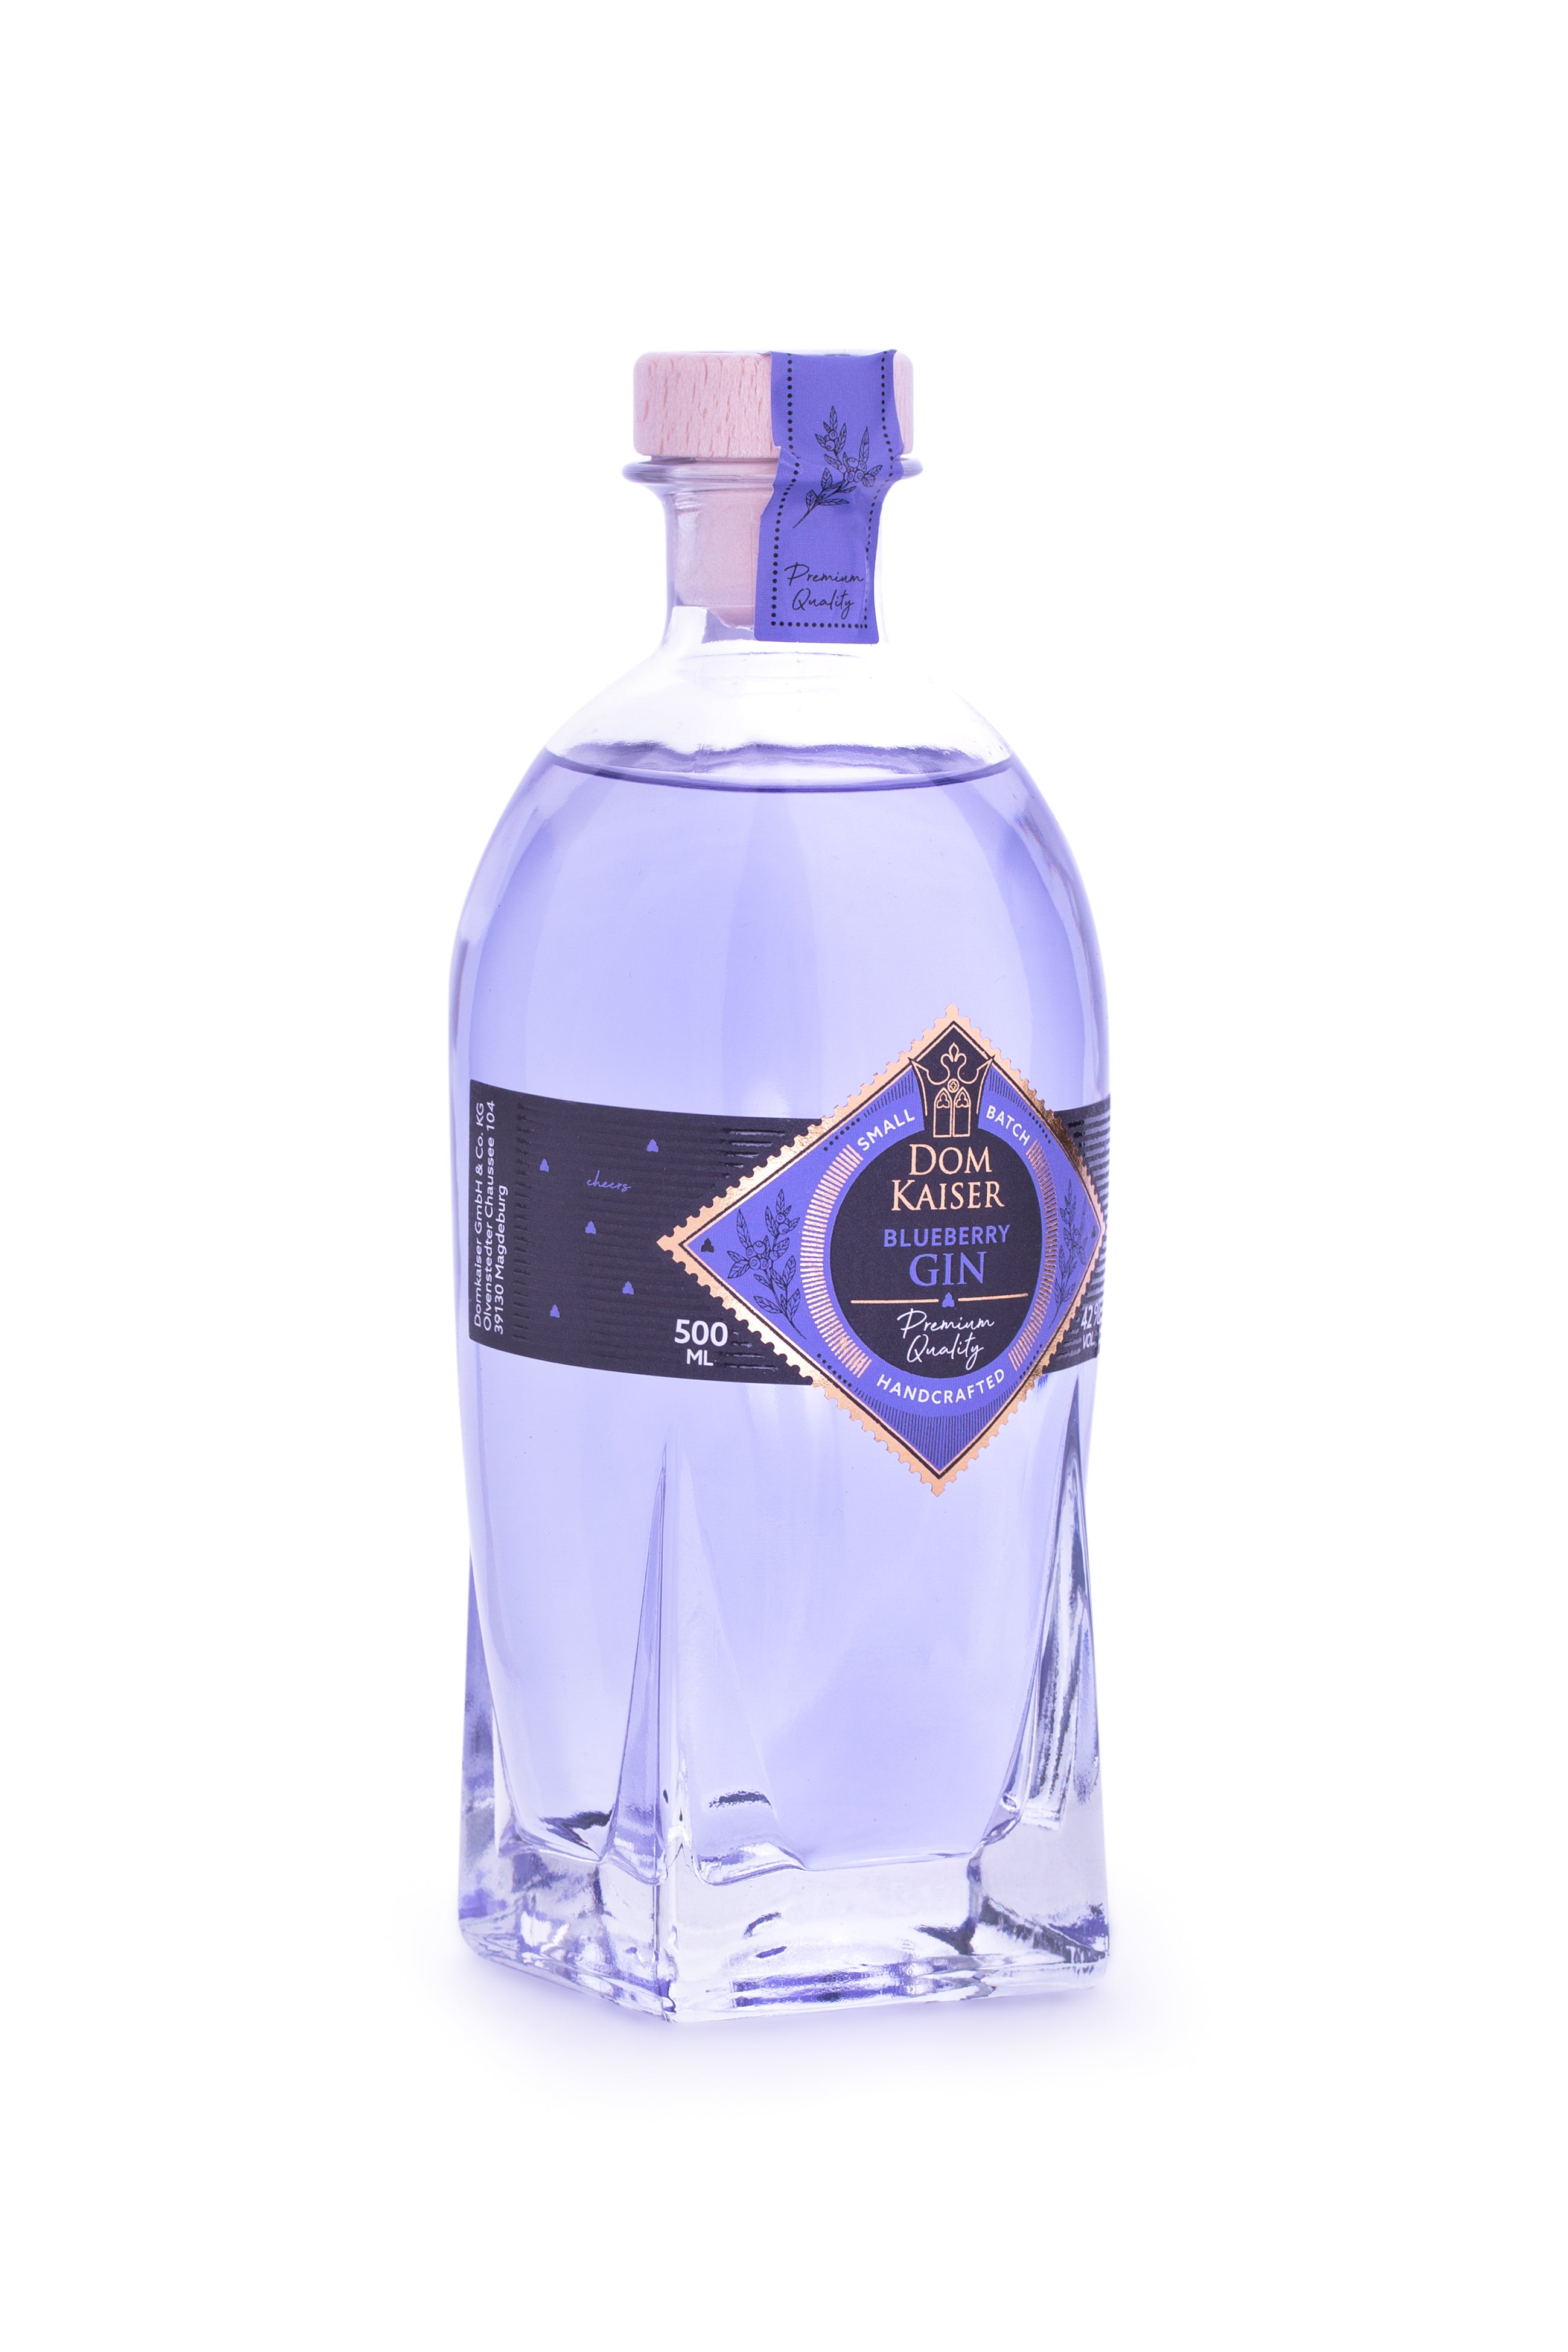 Domkaiser Blueberry Gin